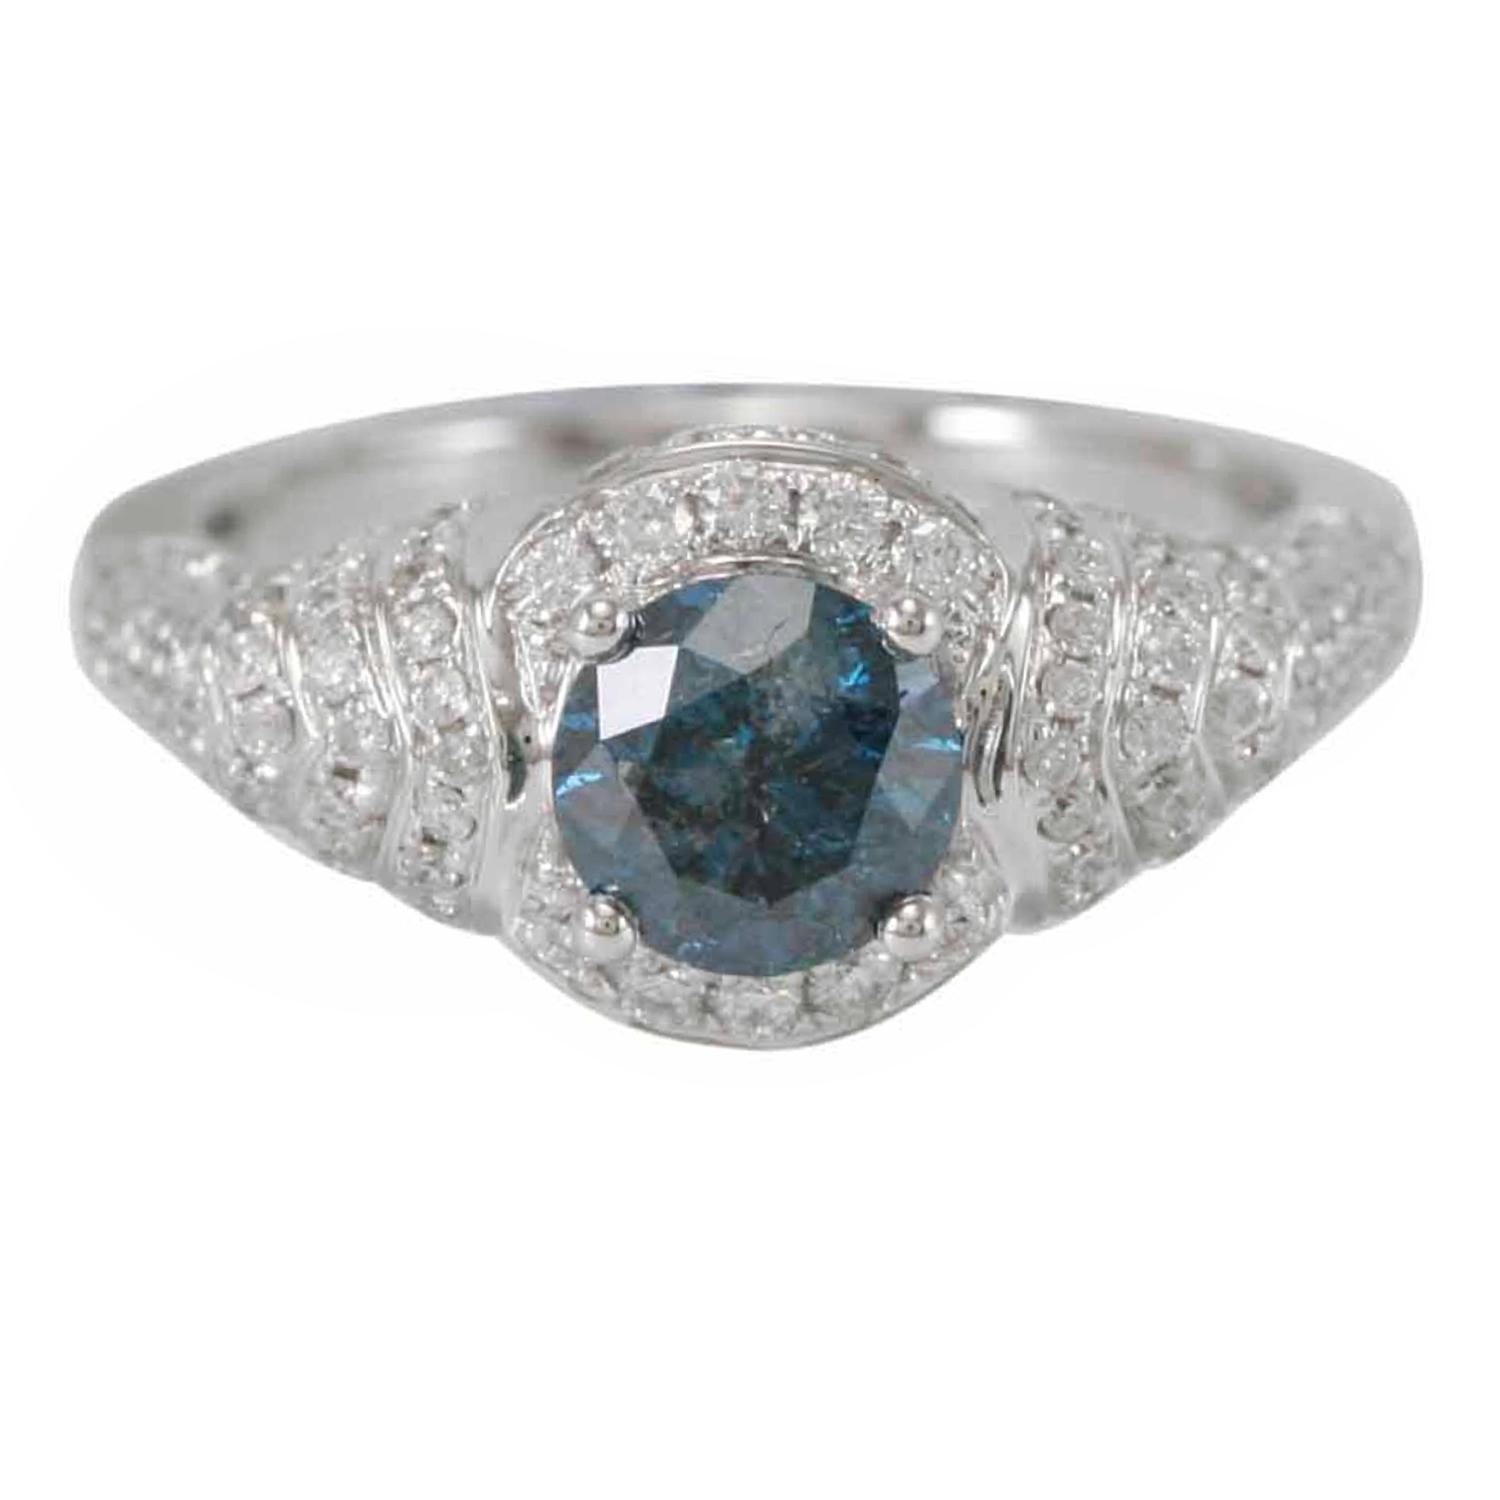 Cette superbe bague unique en son genre de la collection Suzy Levian Limited Edition présente une magnifique pierre centrale en diamant bleu de taille ronde (1,17 ct) avec un ensemble de diamants blancs (0,79 ct), sertis dans une monture en or blanc